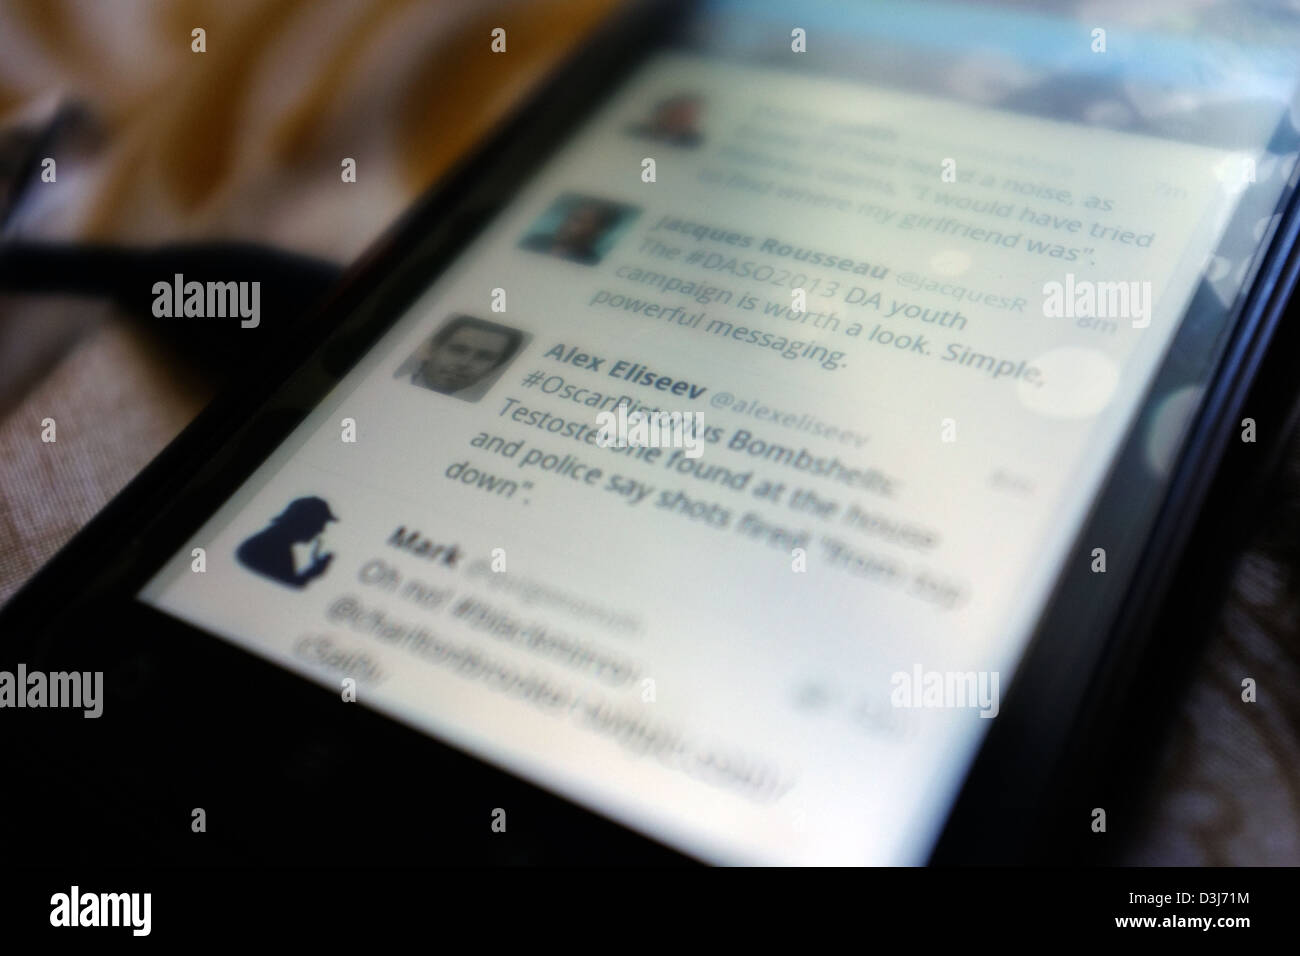 Un telefono intelligente schermo che mostra le relazioni di Twitter per quanto riguarda Oscar Pistorius e il suo assassinio trial in Sud Africa nel 2013. Foto Stock